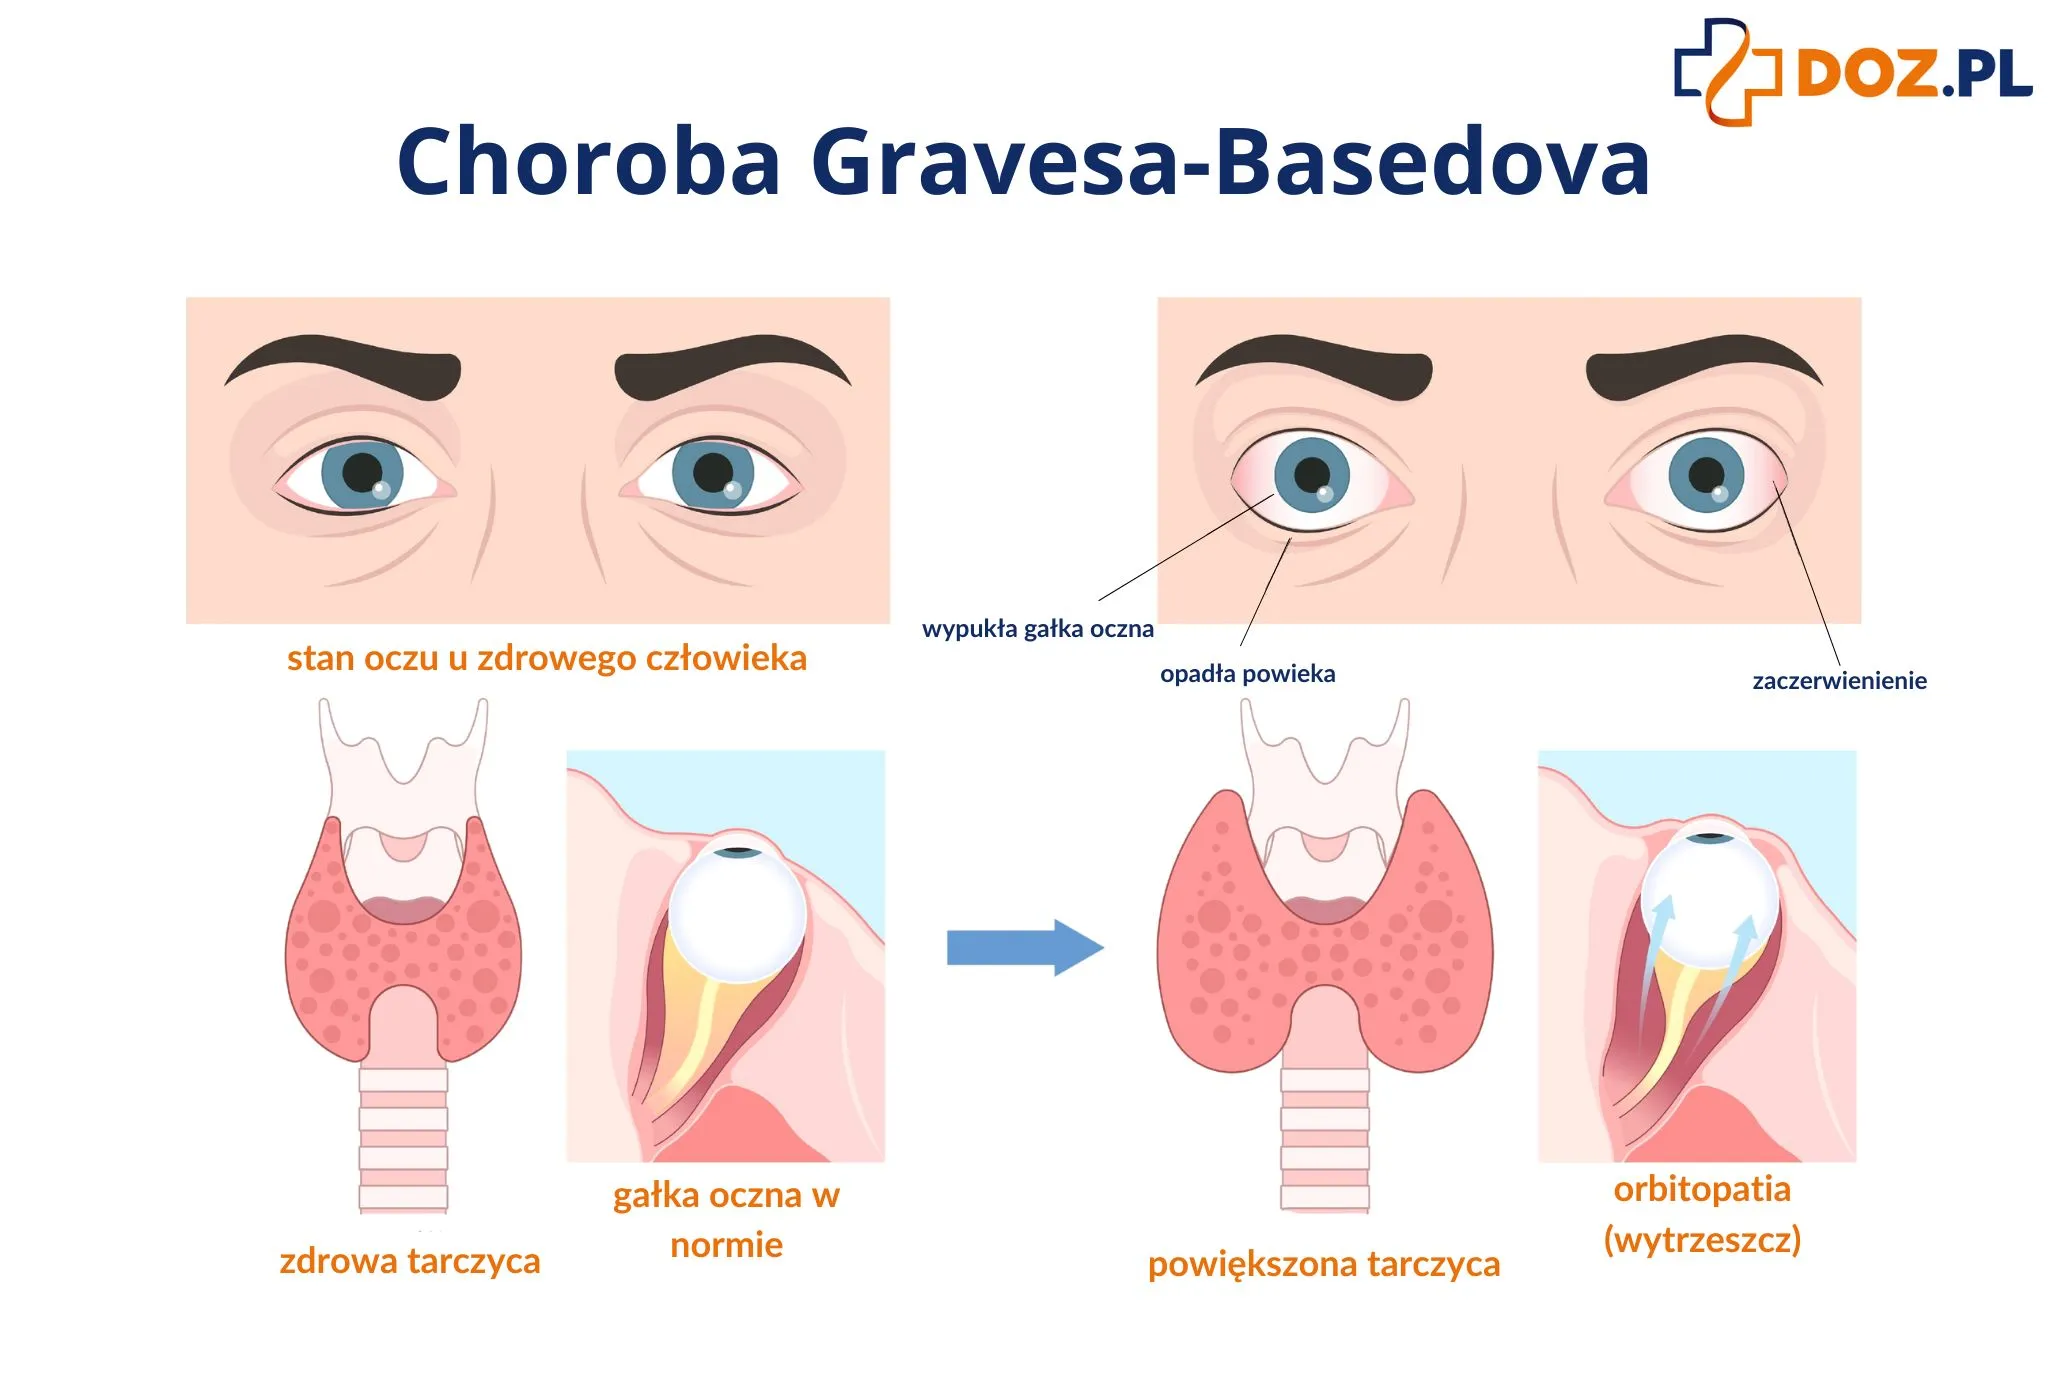 Choroba Gravesa-Basedova - objawy